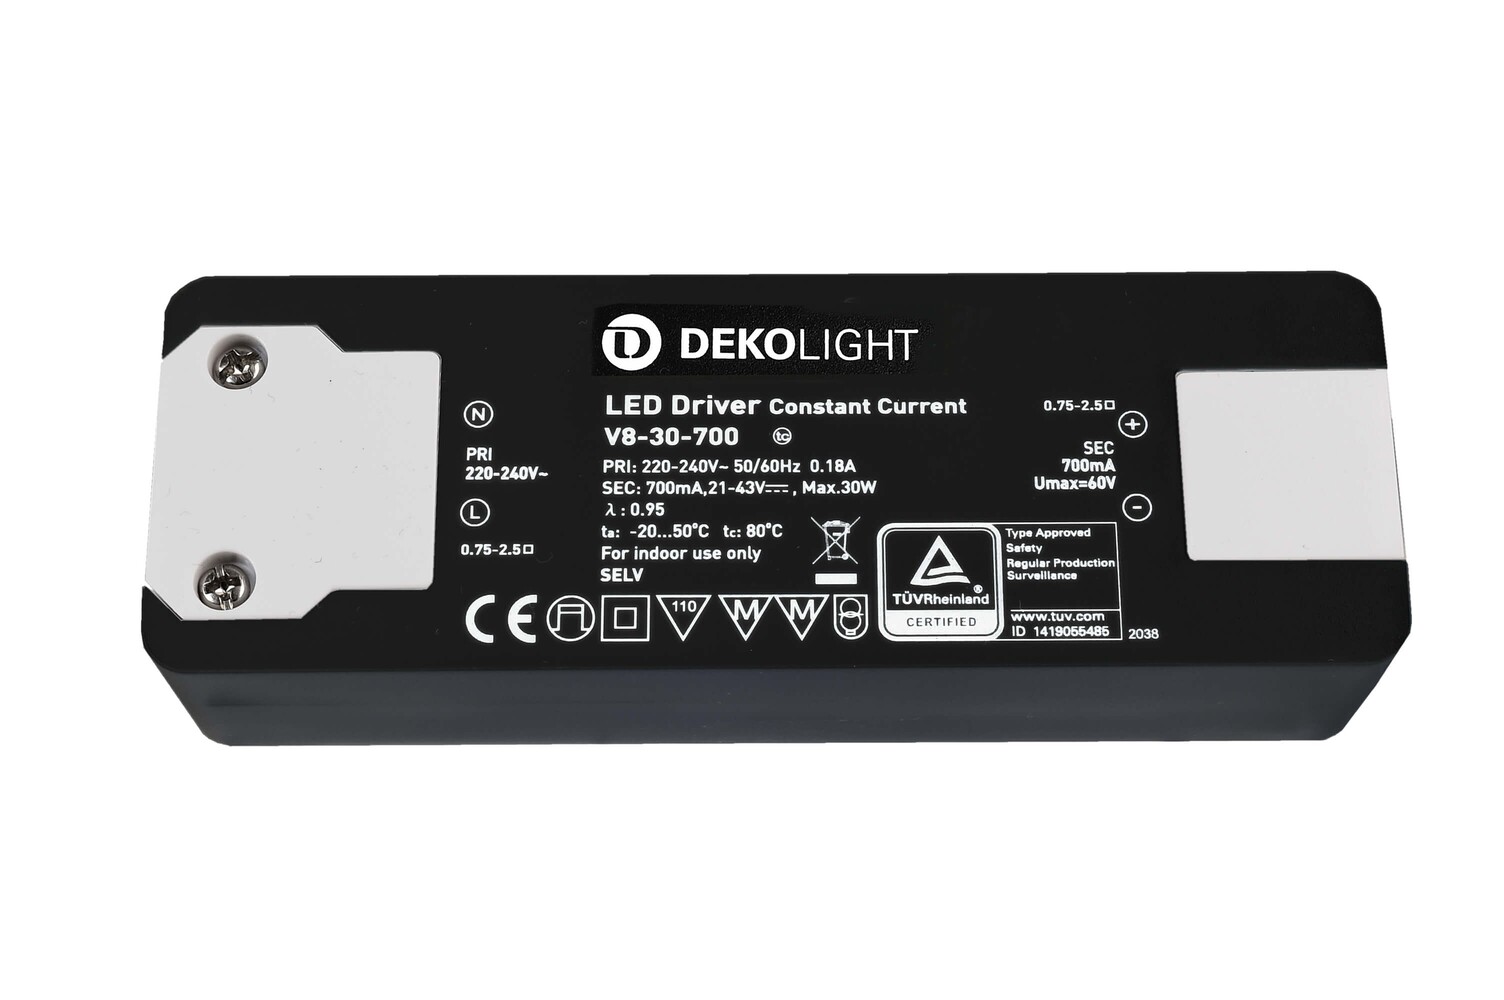 Hochwertiges LED-Netzteil von Deko-Light, konstante Stromversorgung garantiert